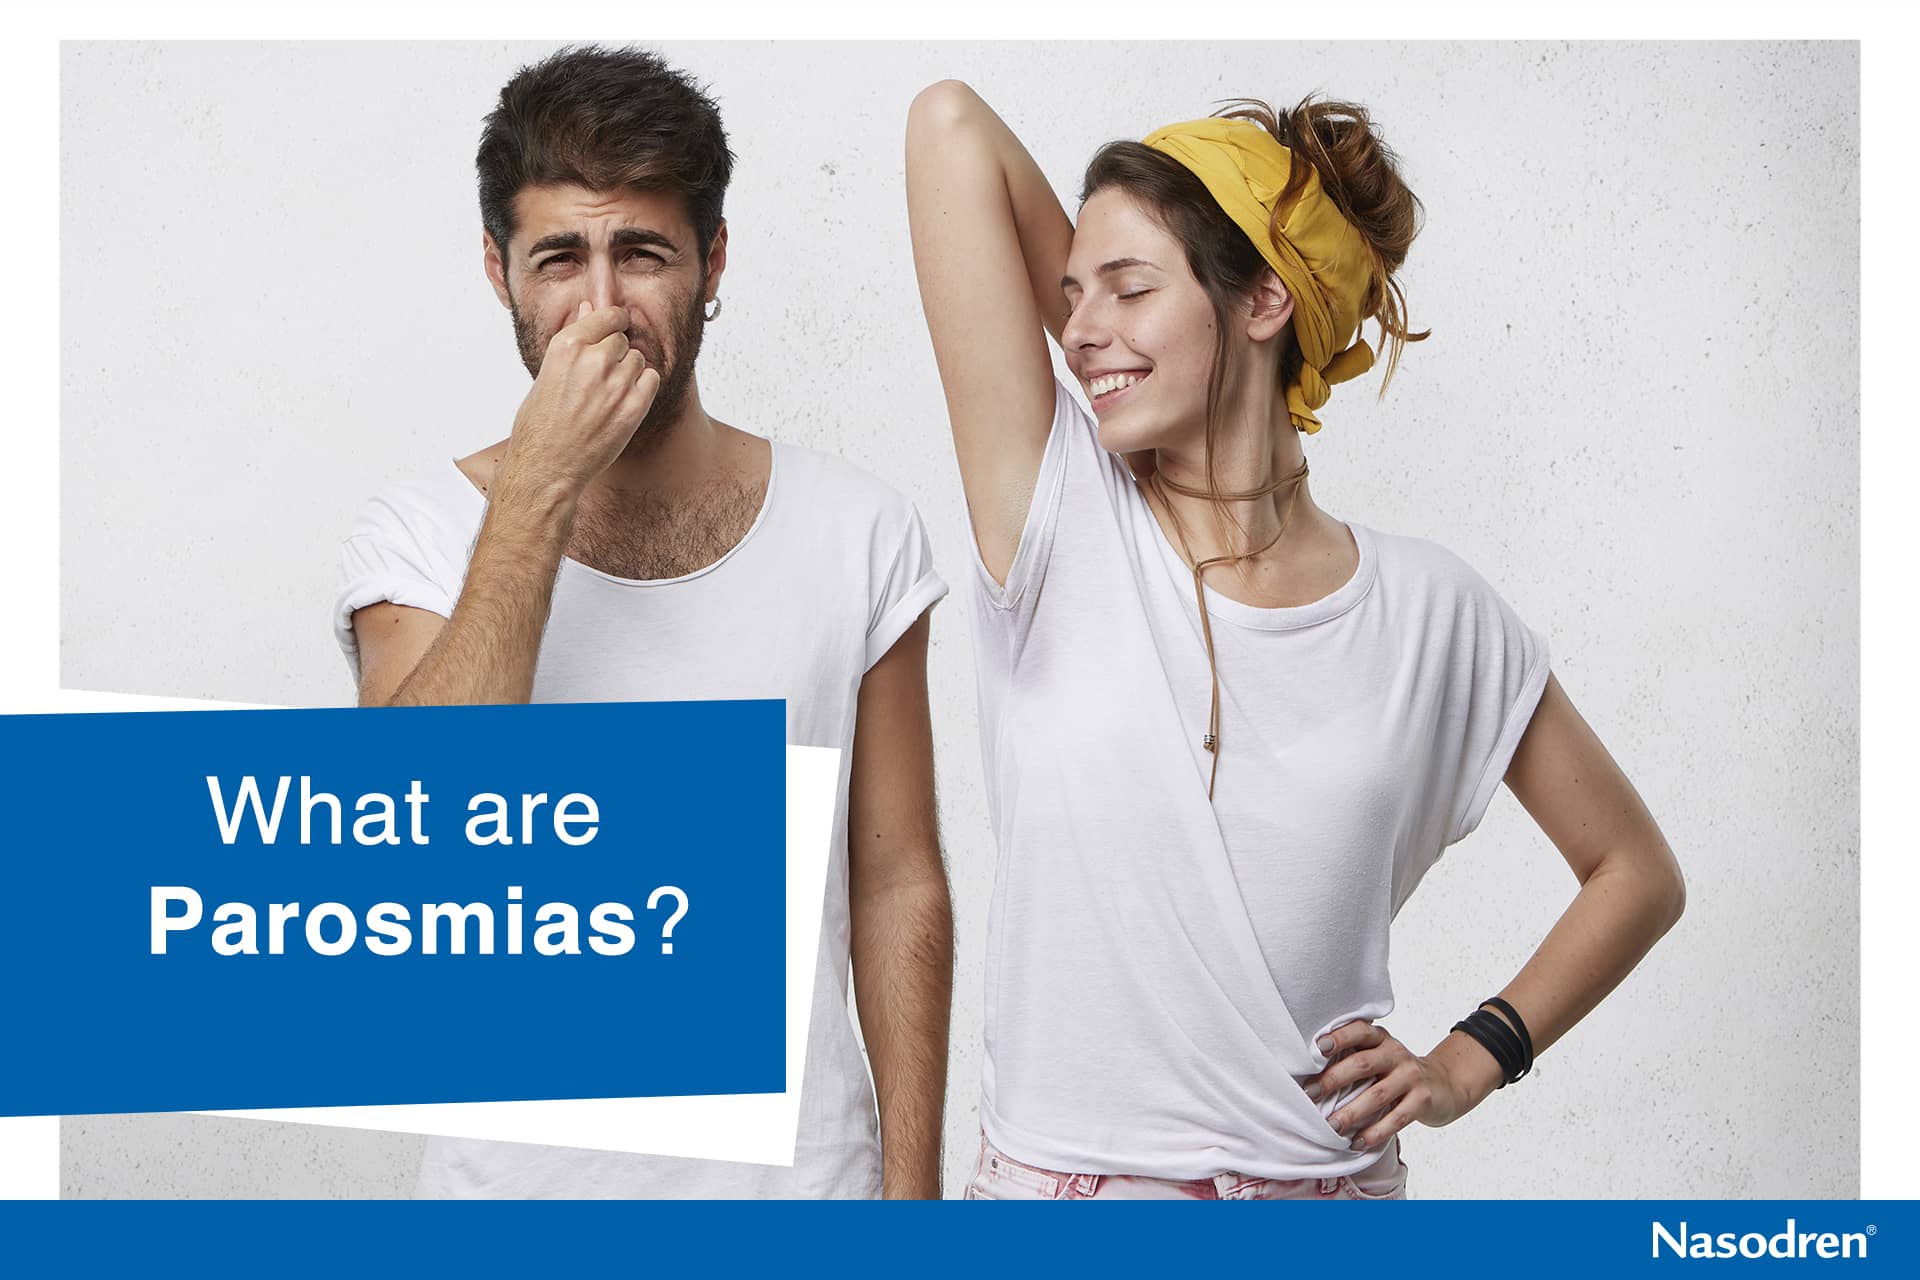 What are Parosmias